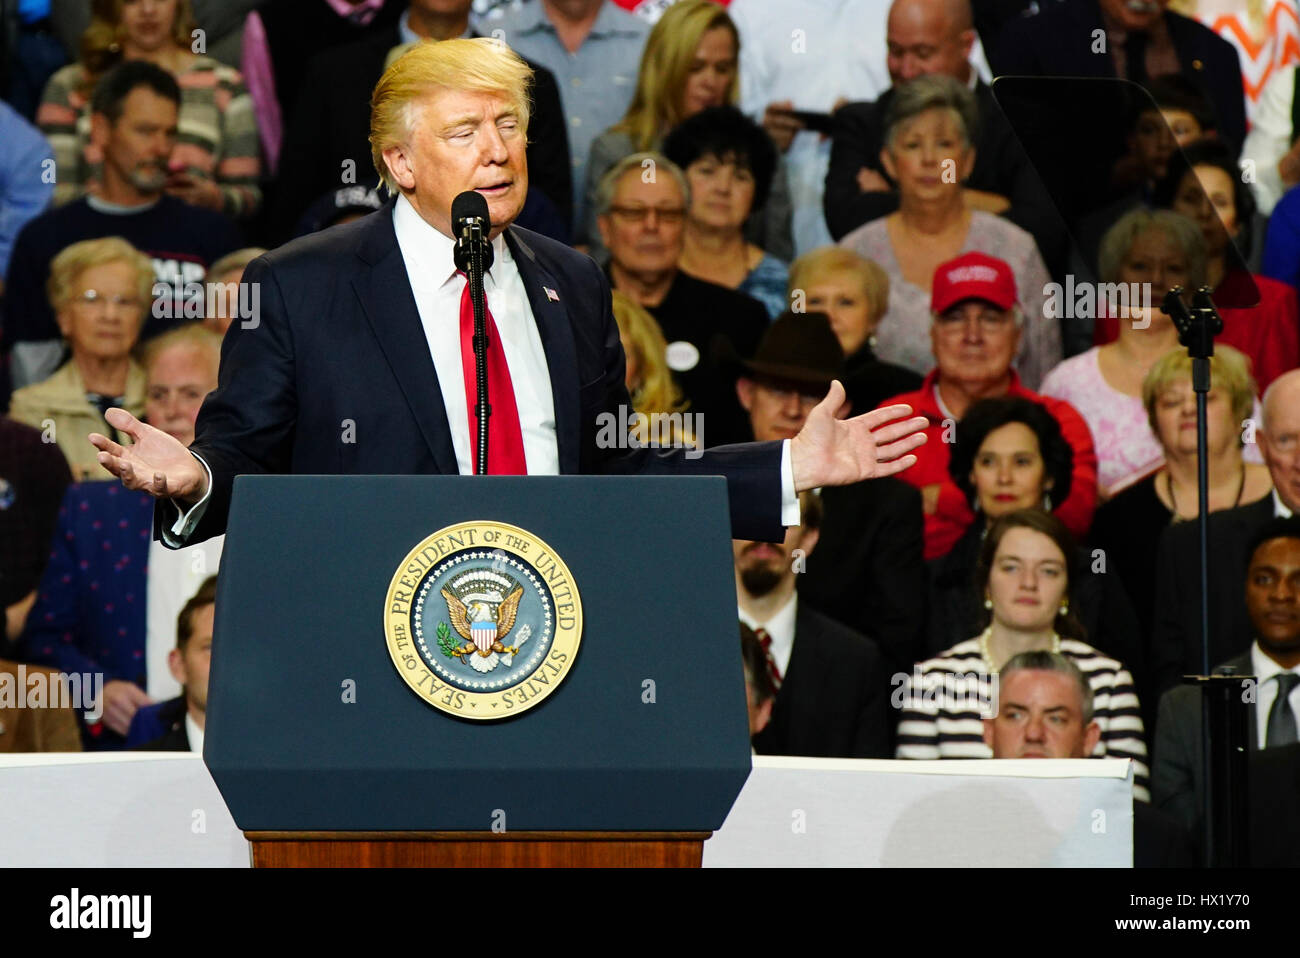 Präsident Donald J Trump spricht während einer Kundgebung in Louisville Exposition Center am 20. März 2017 in Louisville, Kentucky. Stockfoto